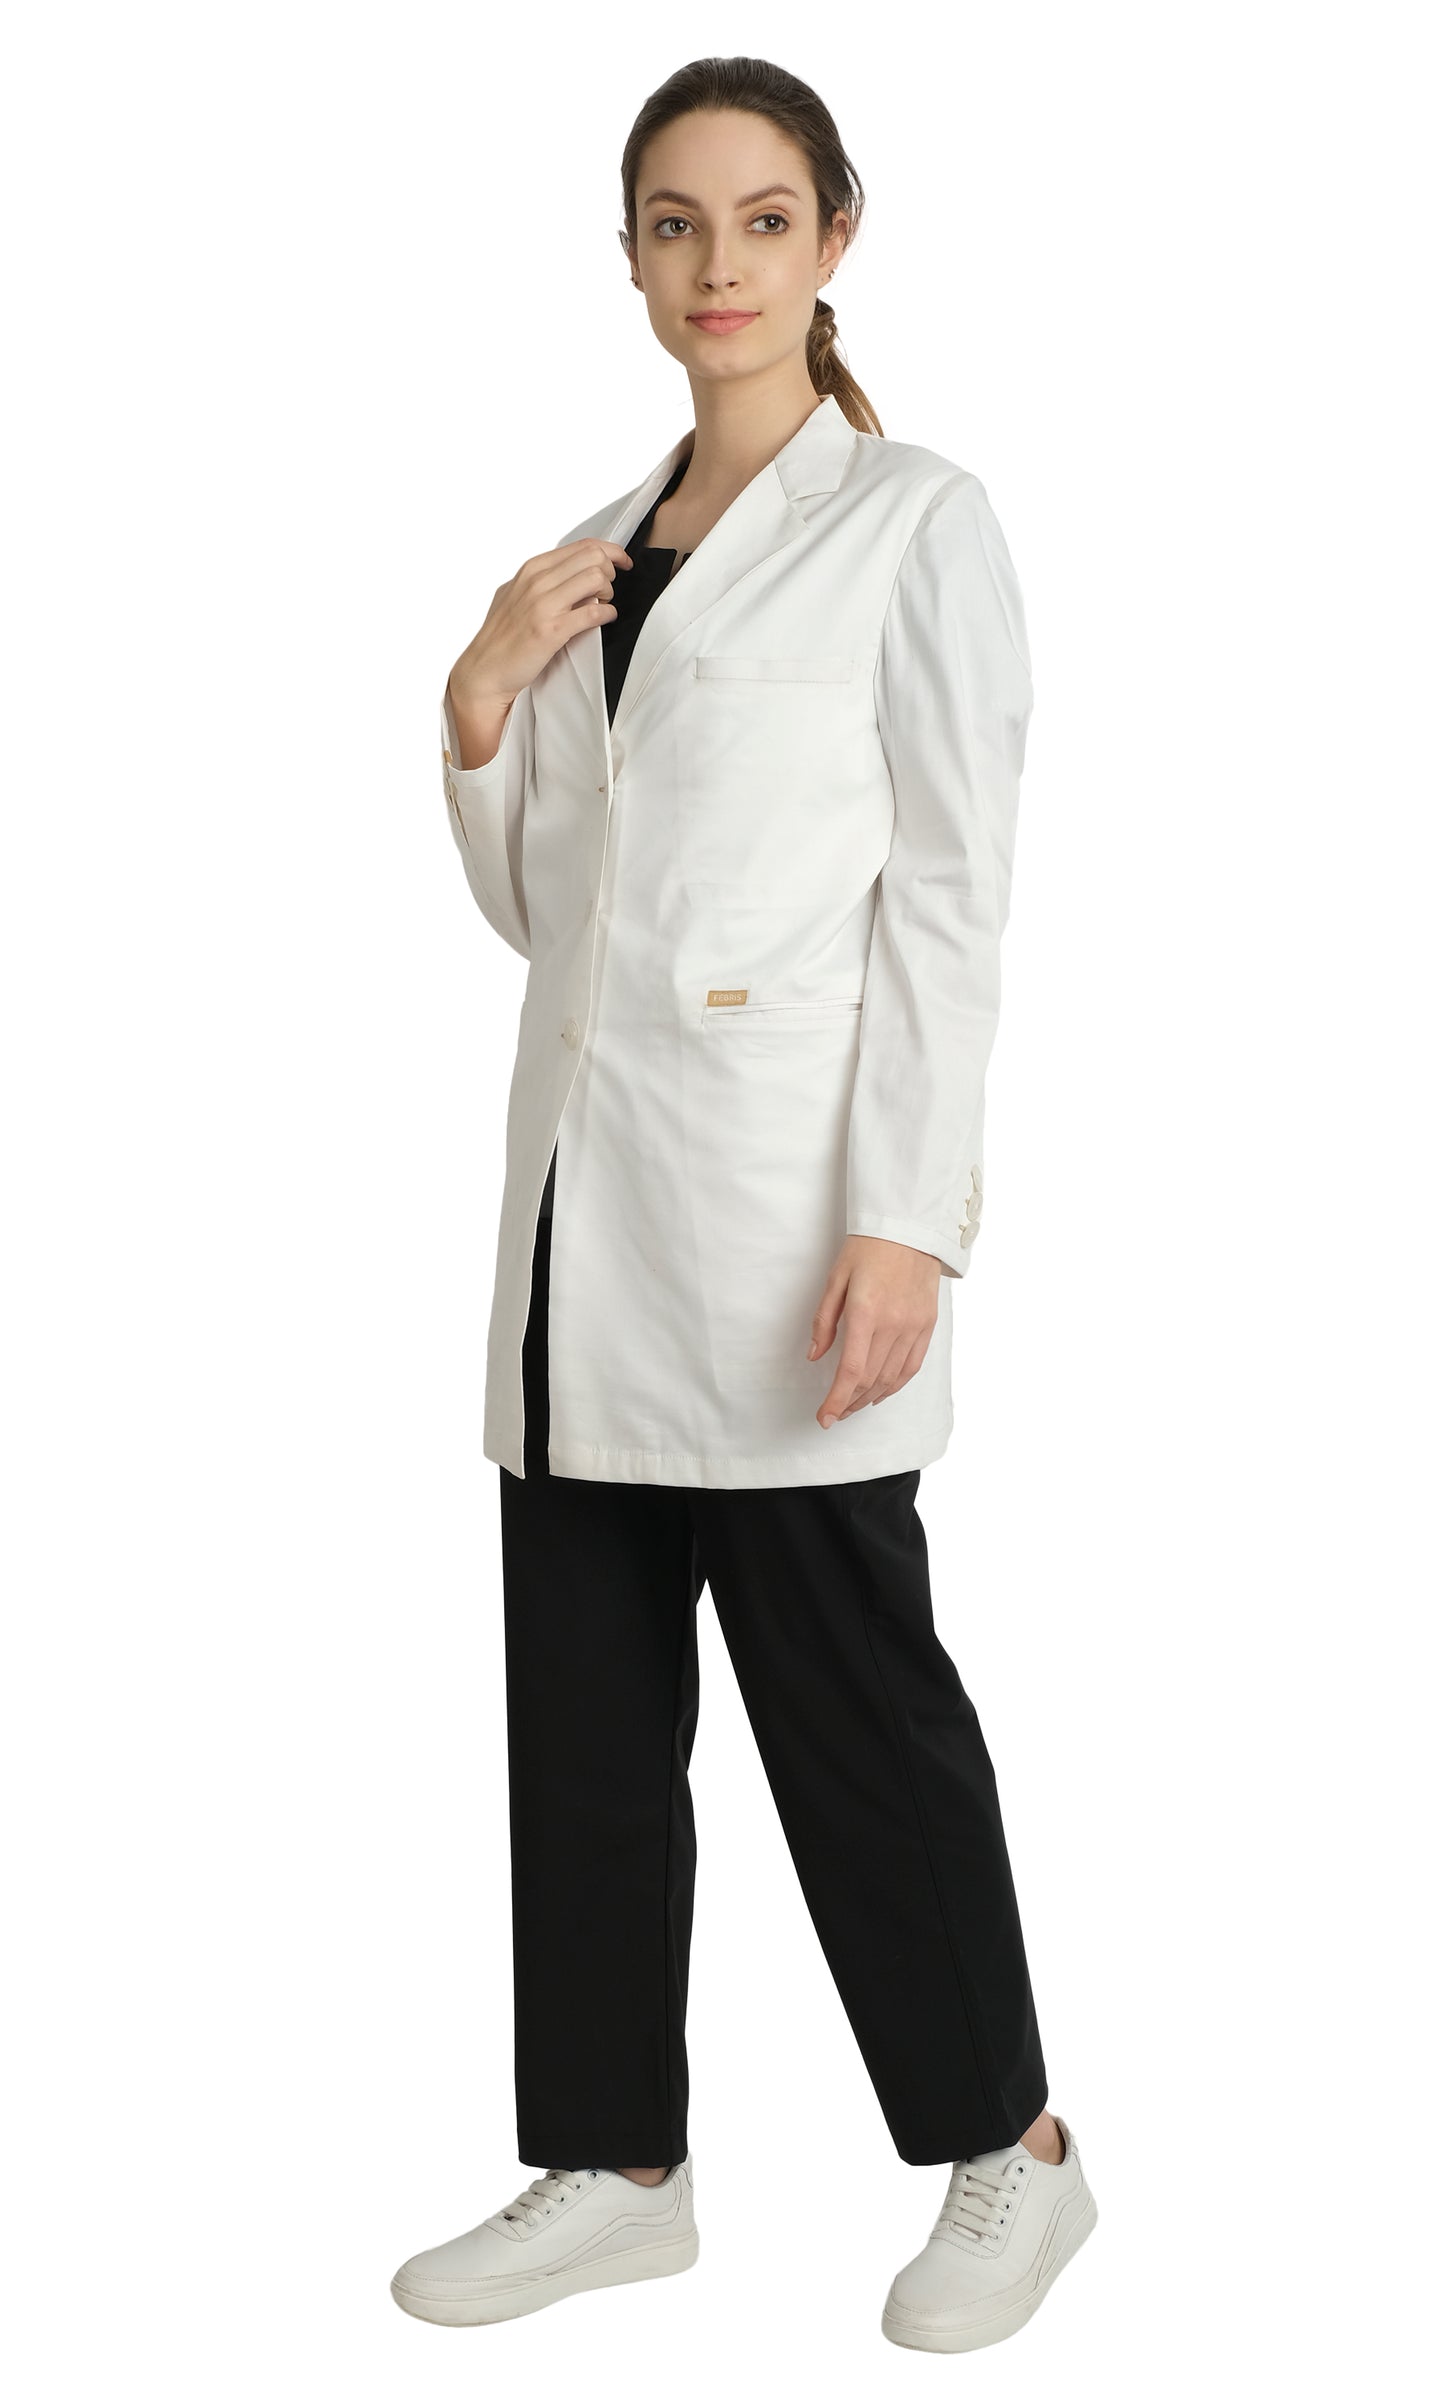 Women's Premium Lab Coat Apron